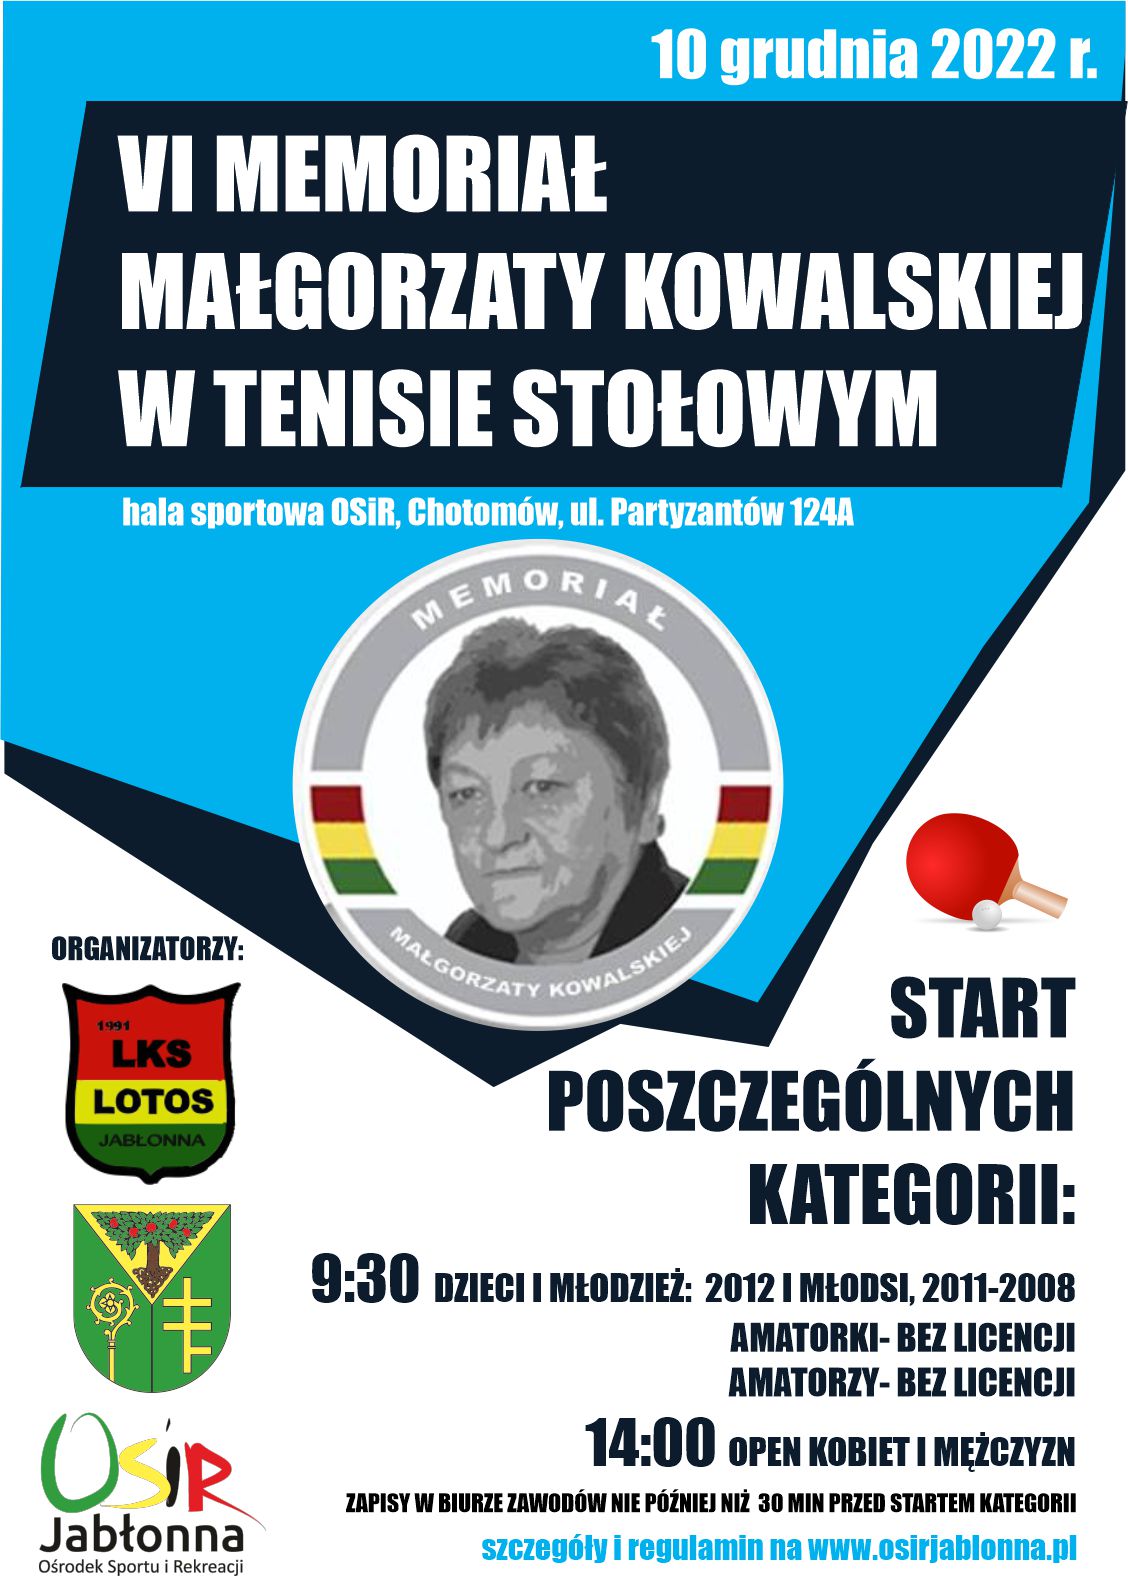 Plakat informujący o VI Memoriale Małgorzaty Kowalskiej w tenisie stołowym 10.12.22 r. 